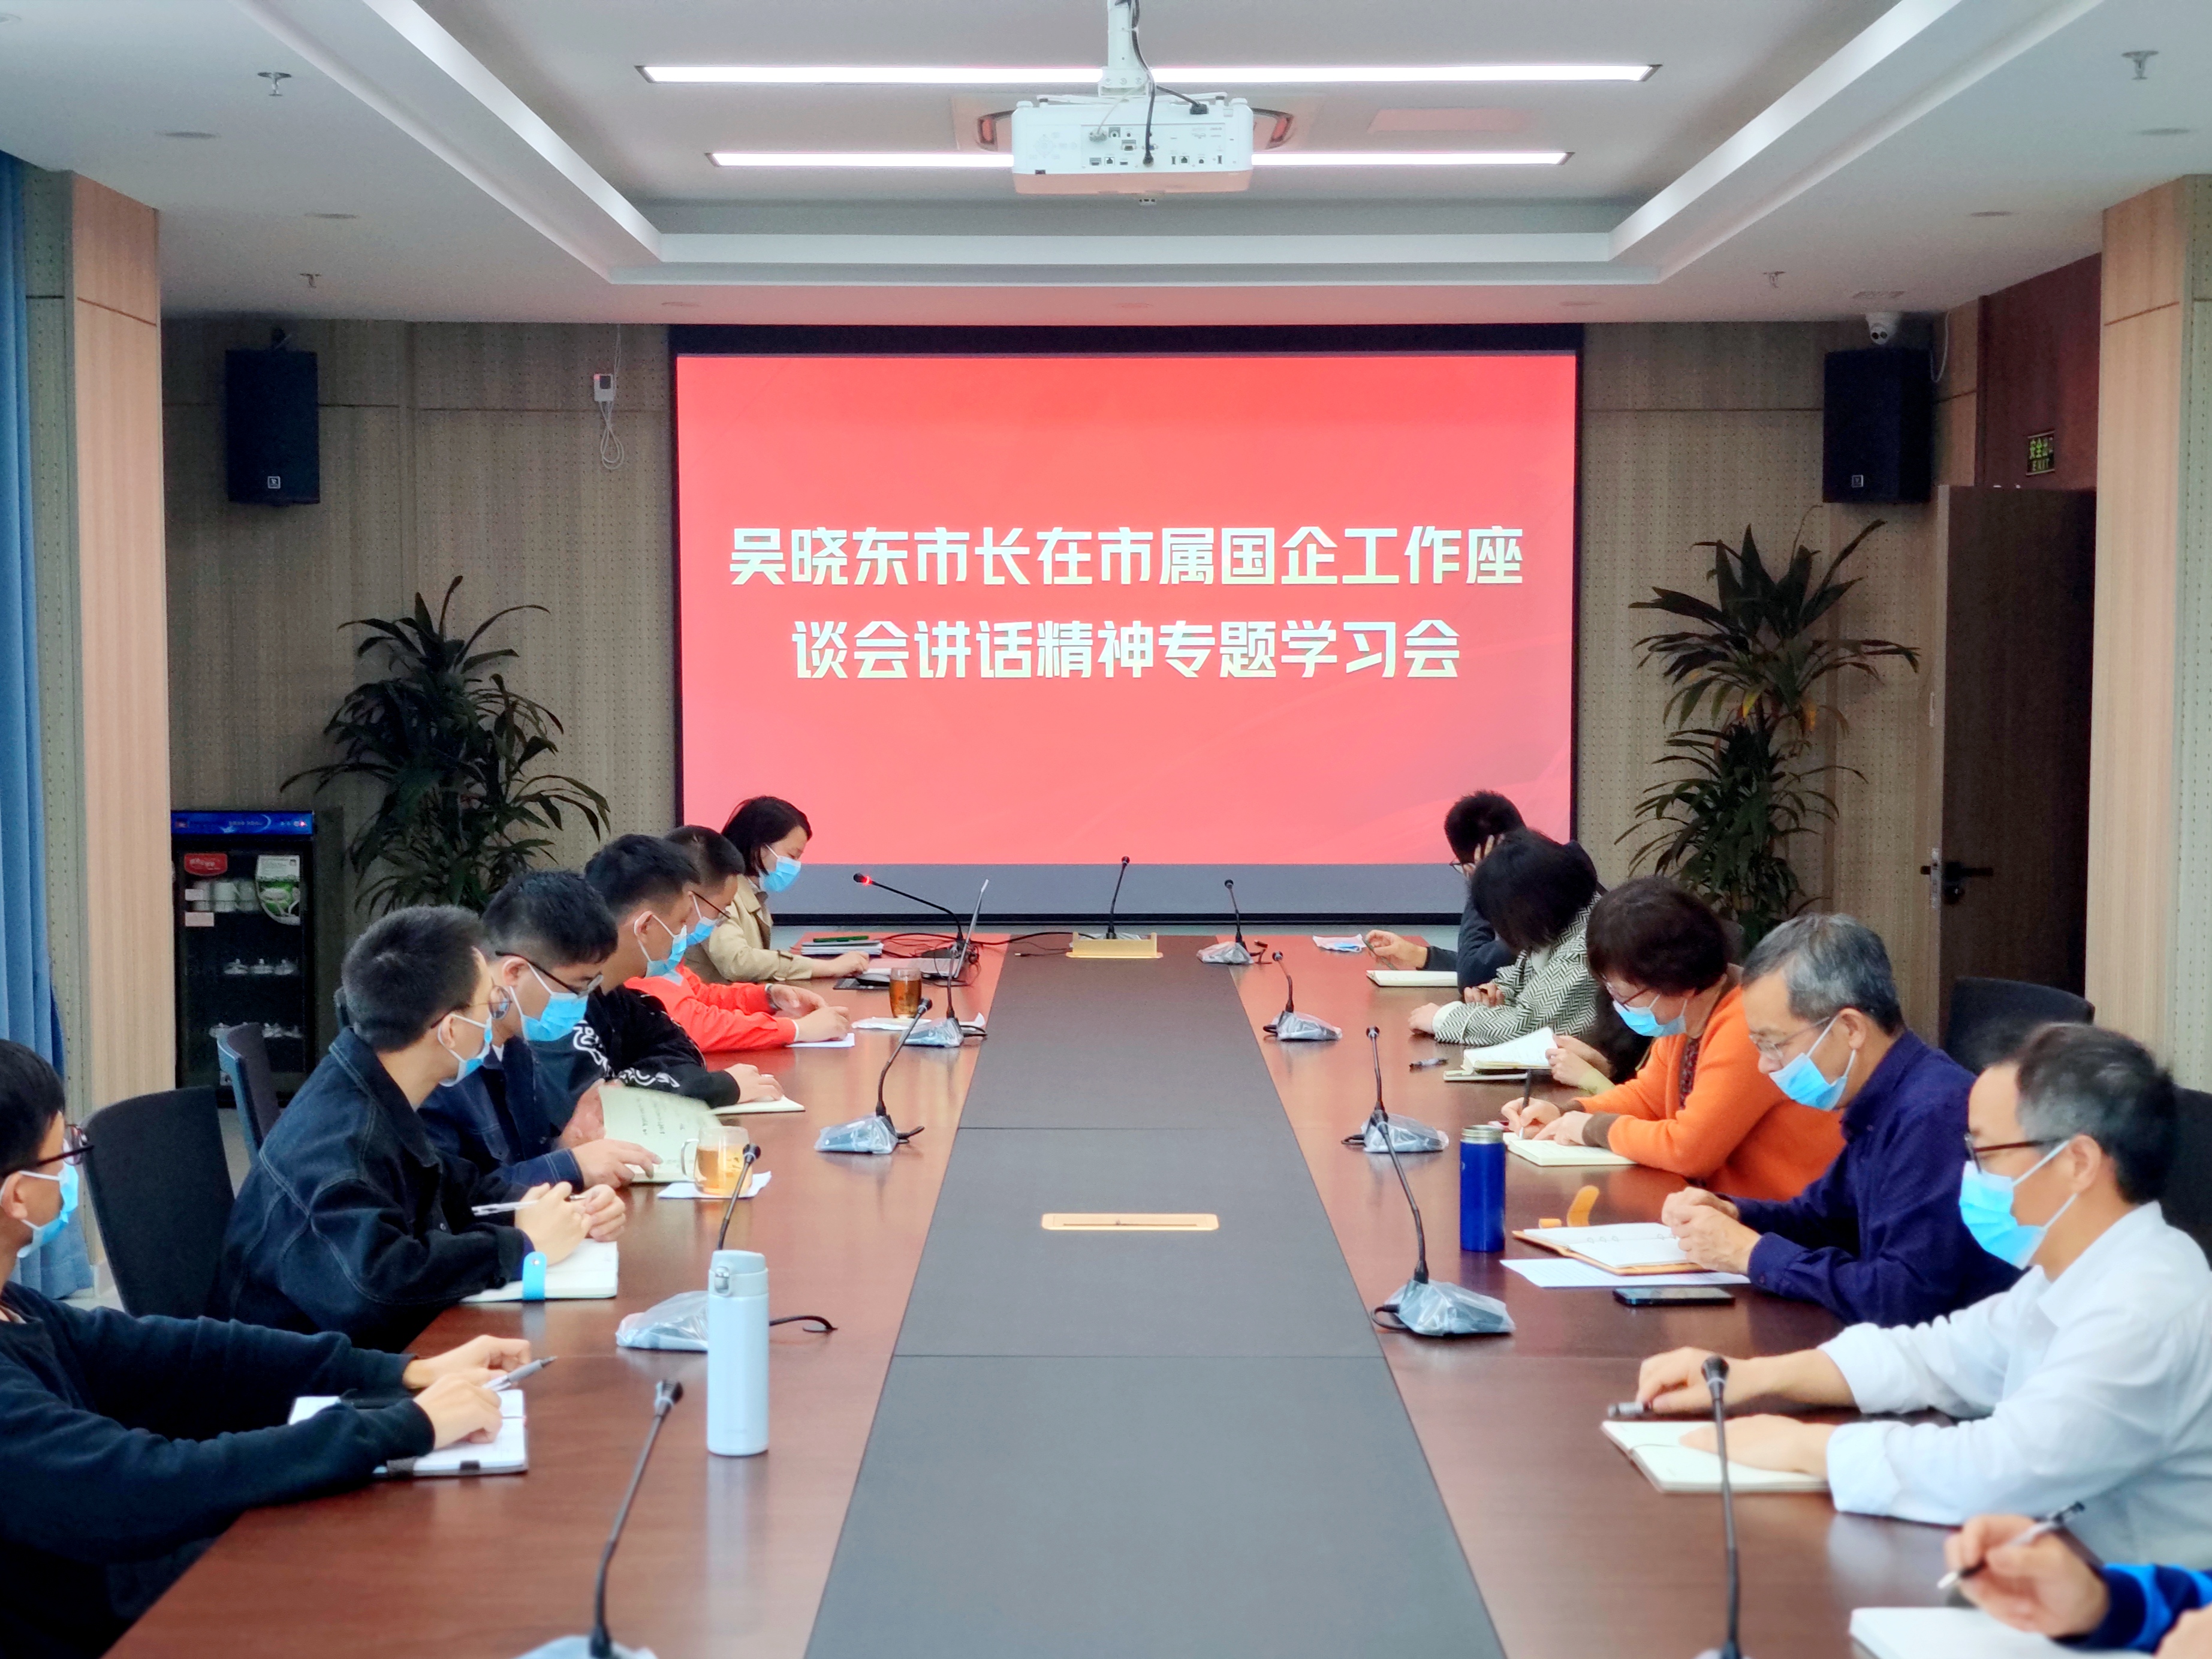 台州天然气传达市属国企工作座谈会和国运集团专题学习会的会议精神并贯彻落实